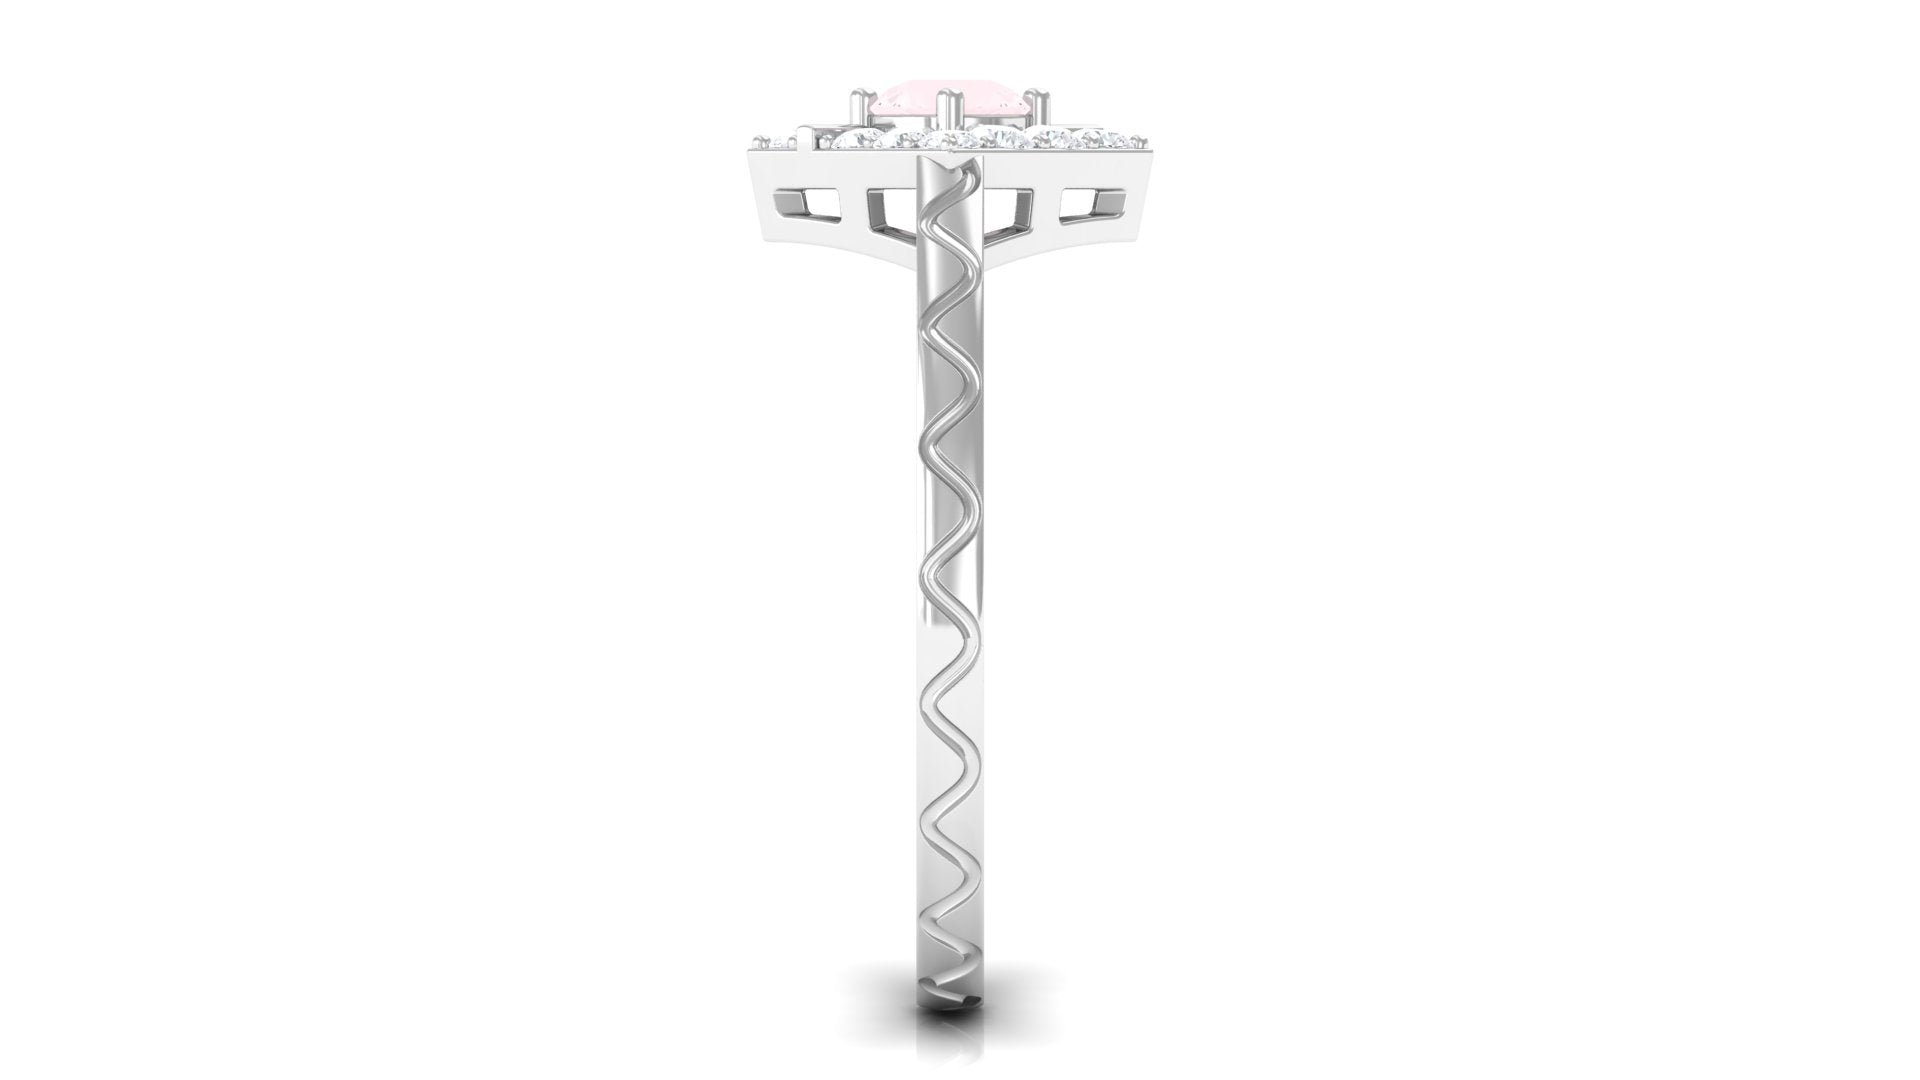 0.50 CT Rose Quartz Minimal Textured Ring with Diamond Accent Rose Quartz - ( AAA ) - Quality - Rosec Jewels